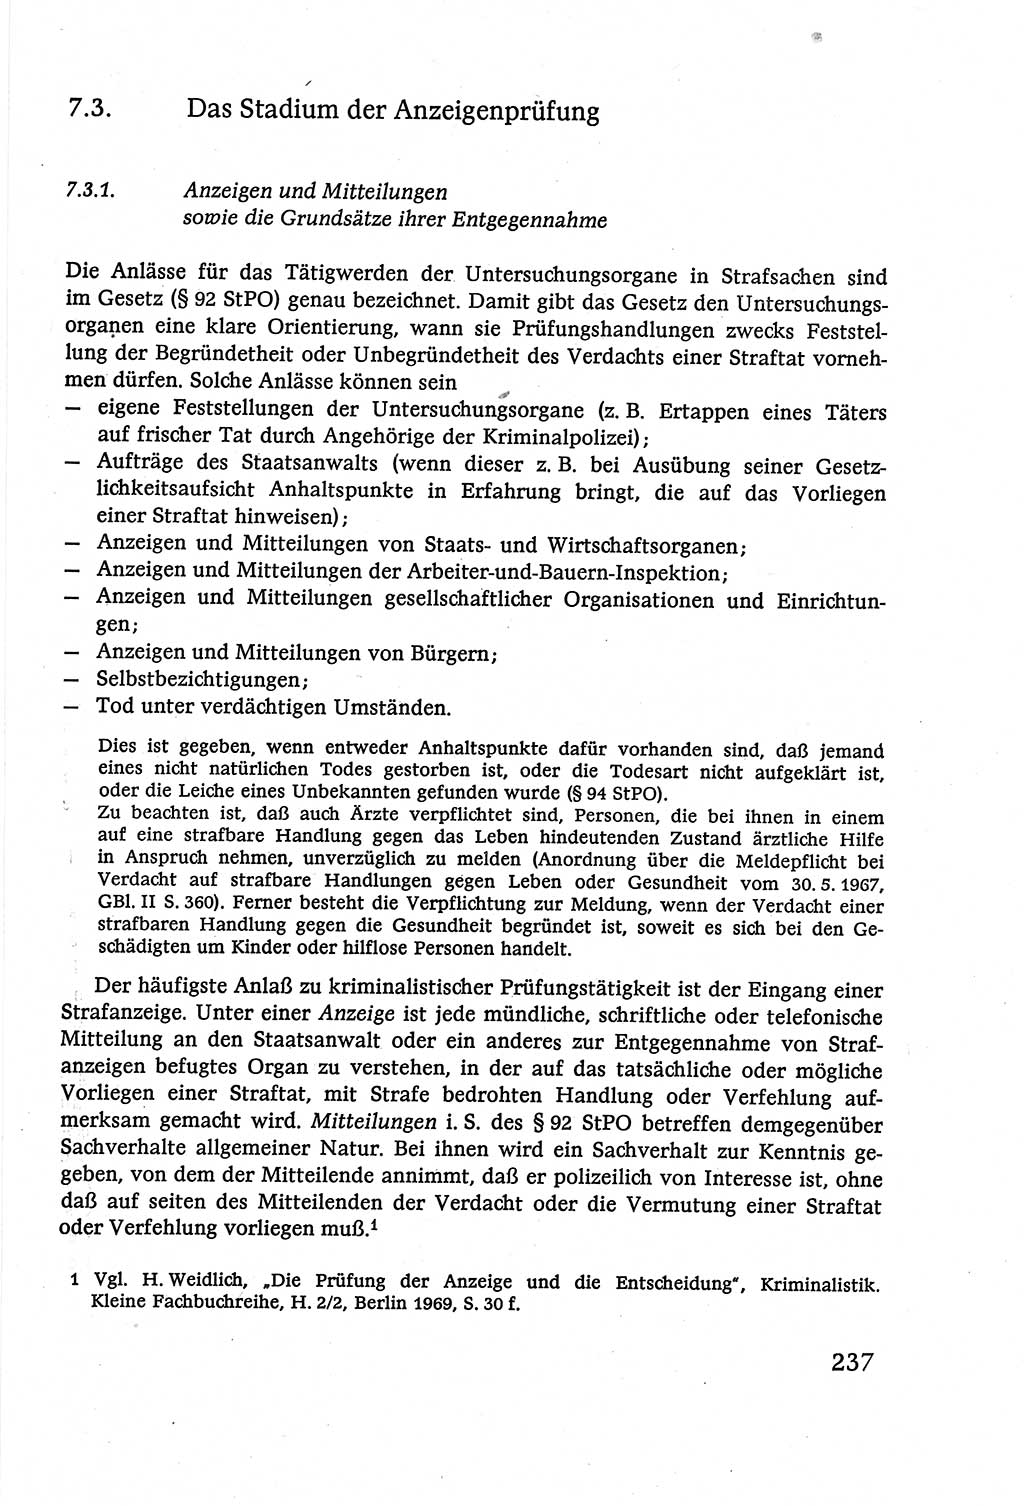 Strafverfahrensrecht [Deutsche Demokratische Republik (DDR)], Lehrbuch 1977, Seite 237 (Strafverf.-R. DDR Lb. 1977, S. 237)